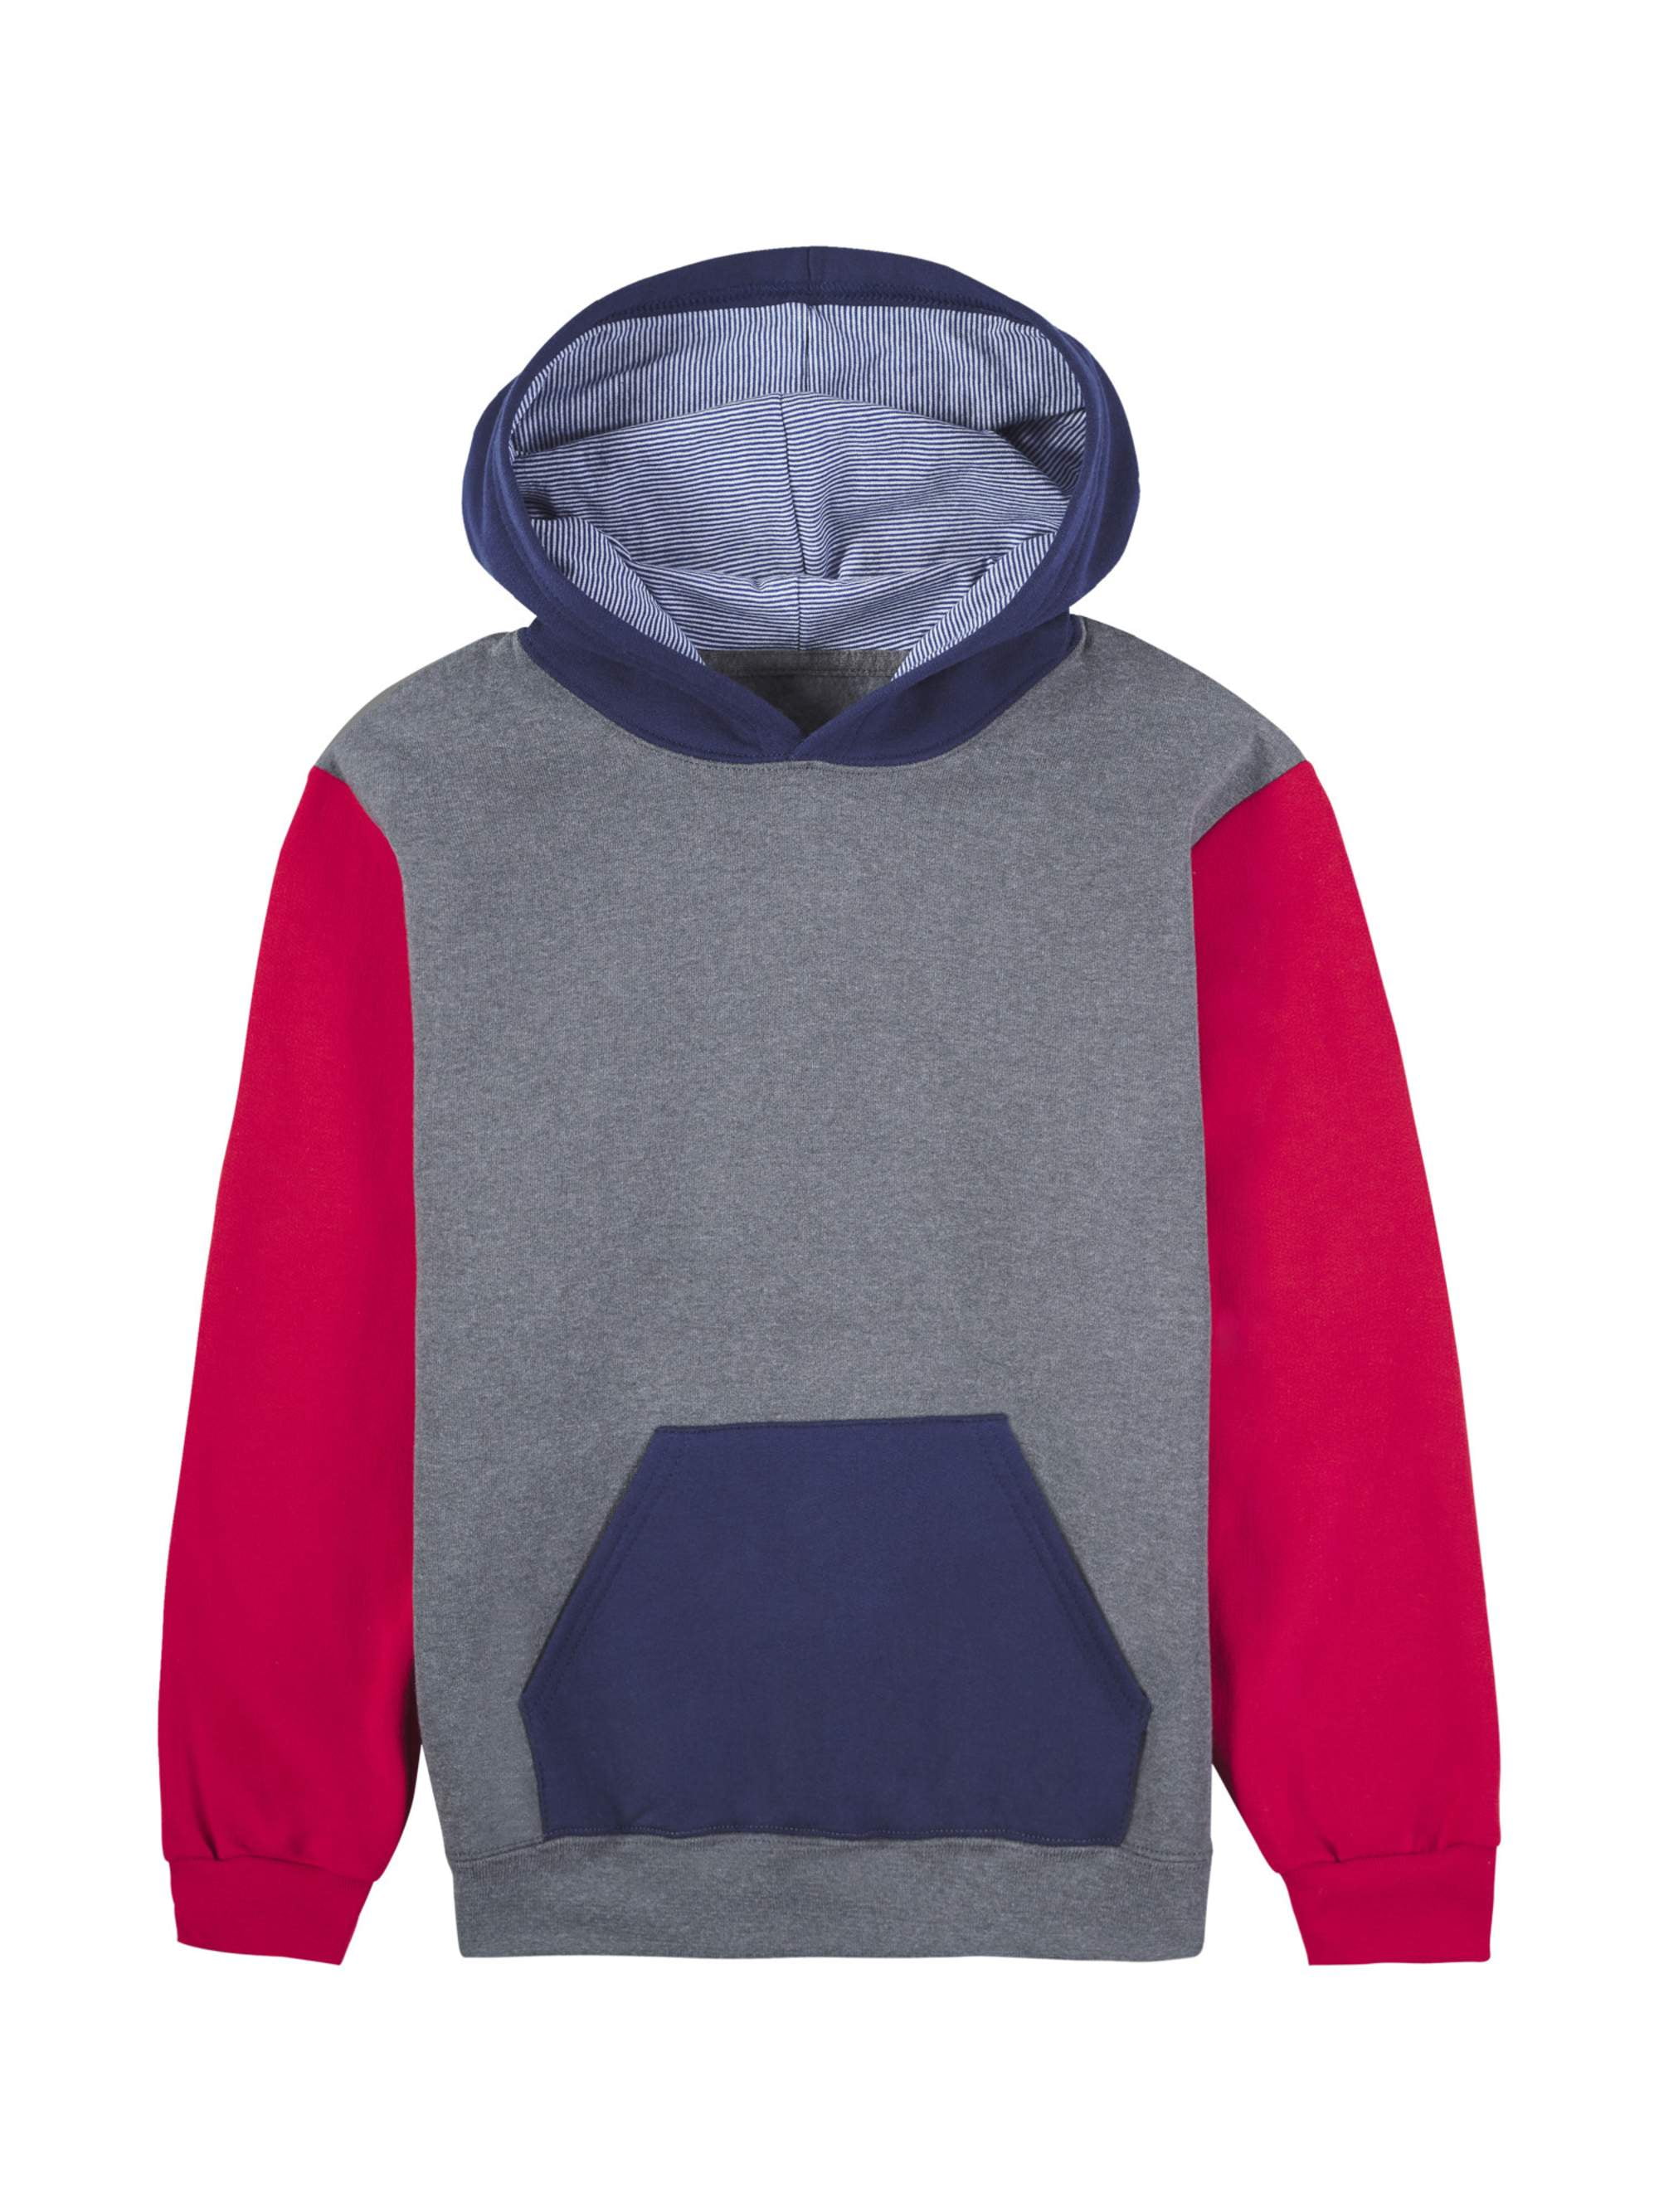 NOROZE Boys Hoodie Kids Contrast Fleece Sweatshirt Pullover Top 